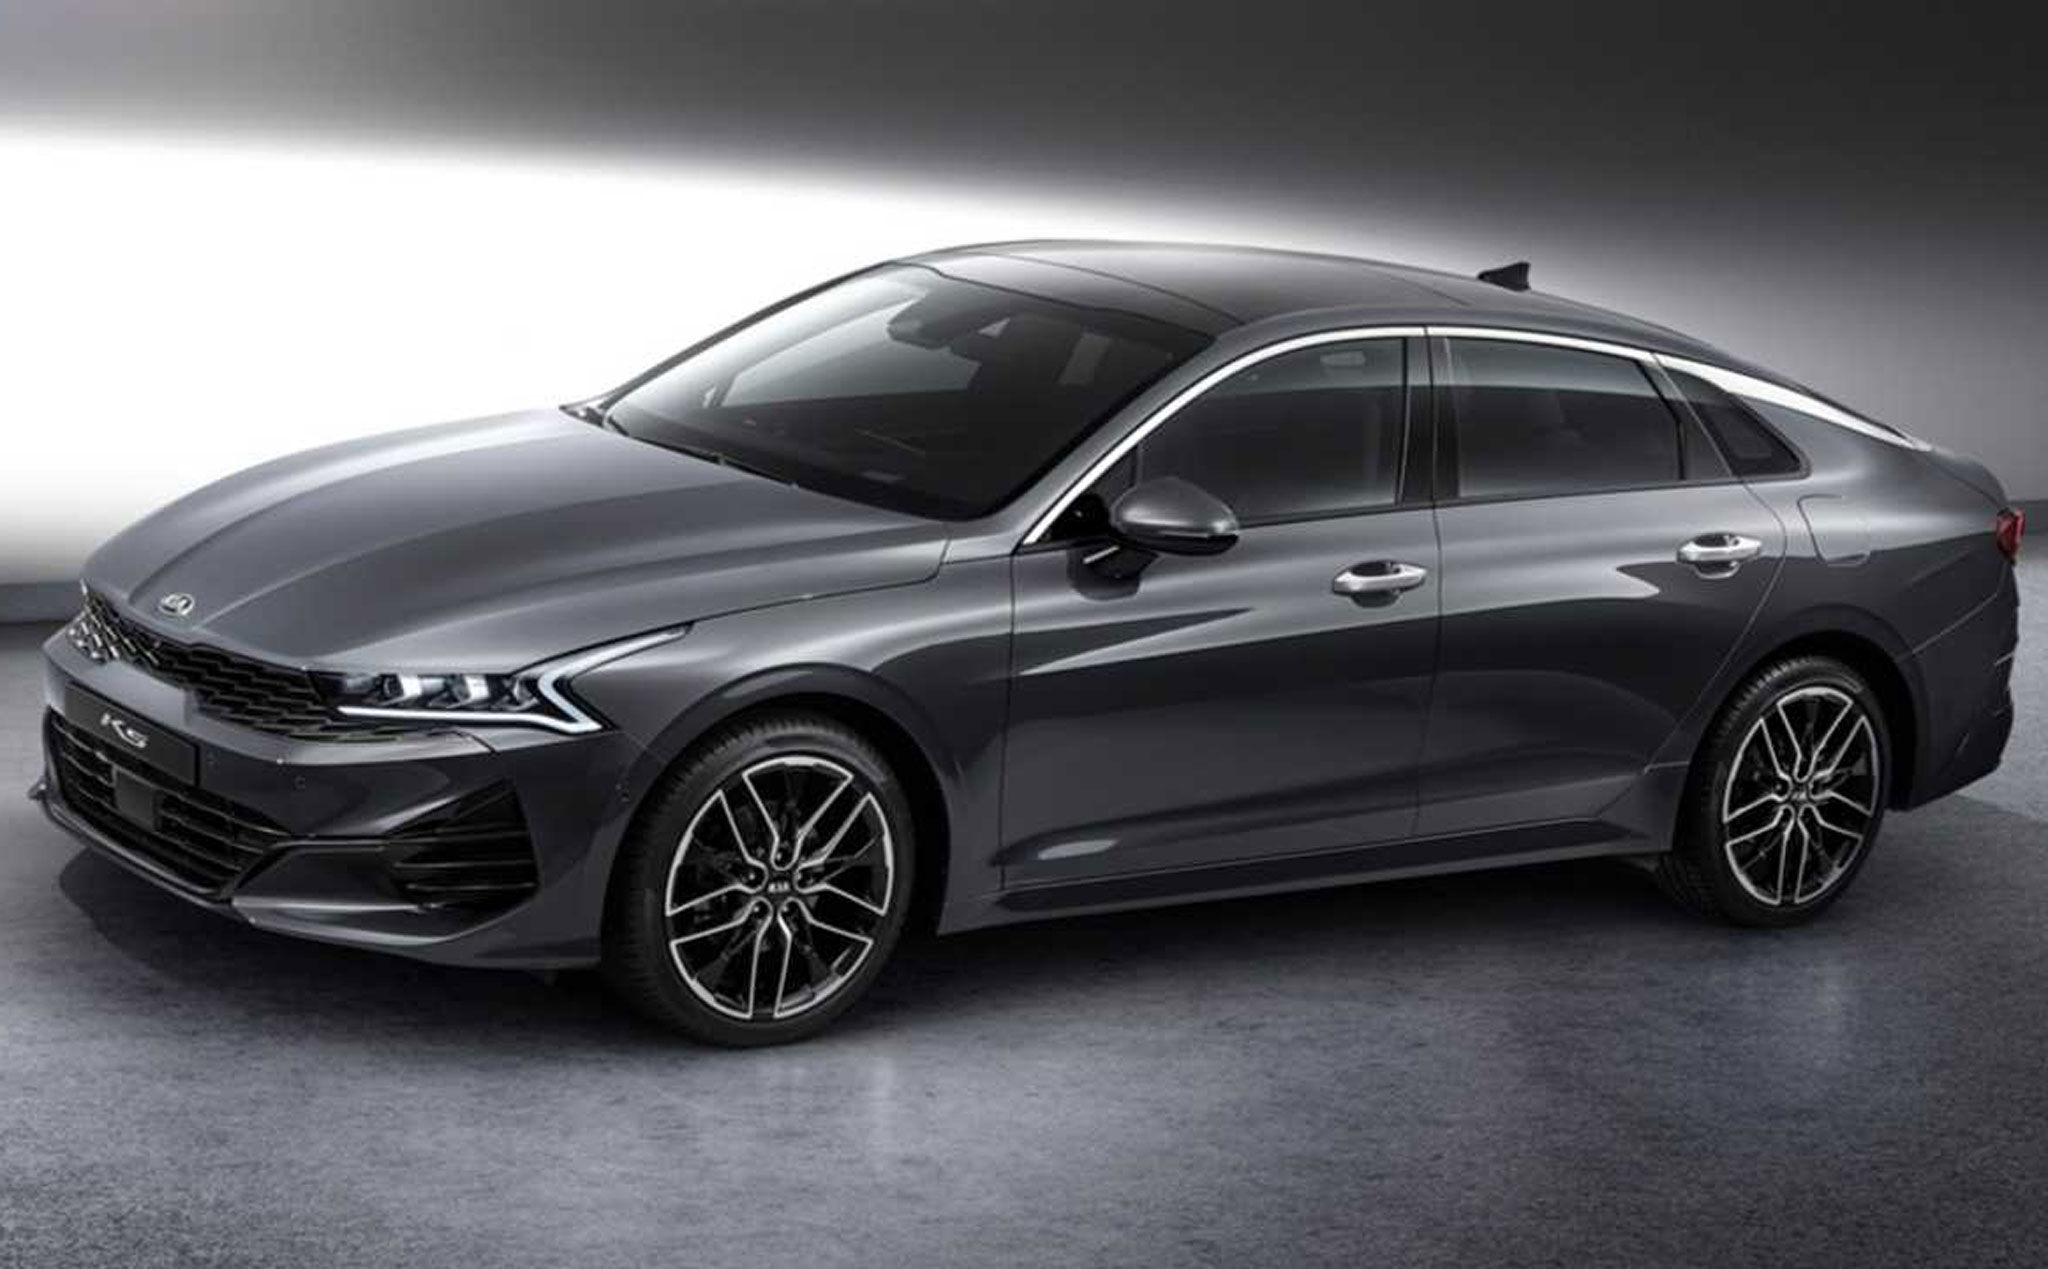 Kia Optima 2021: thiết kế mạnh mẽ, đèn hậu LED 1 dải, có thể dùng động cơ của Hyundai Sonata